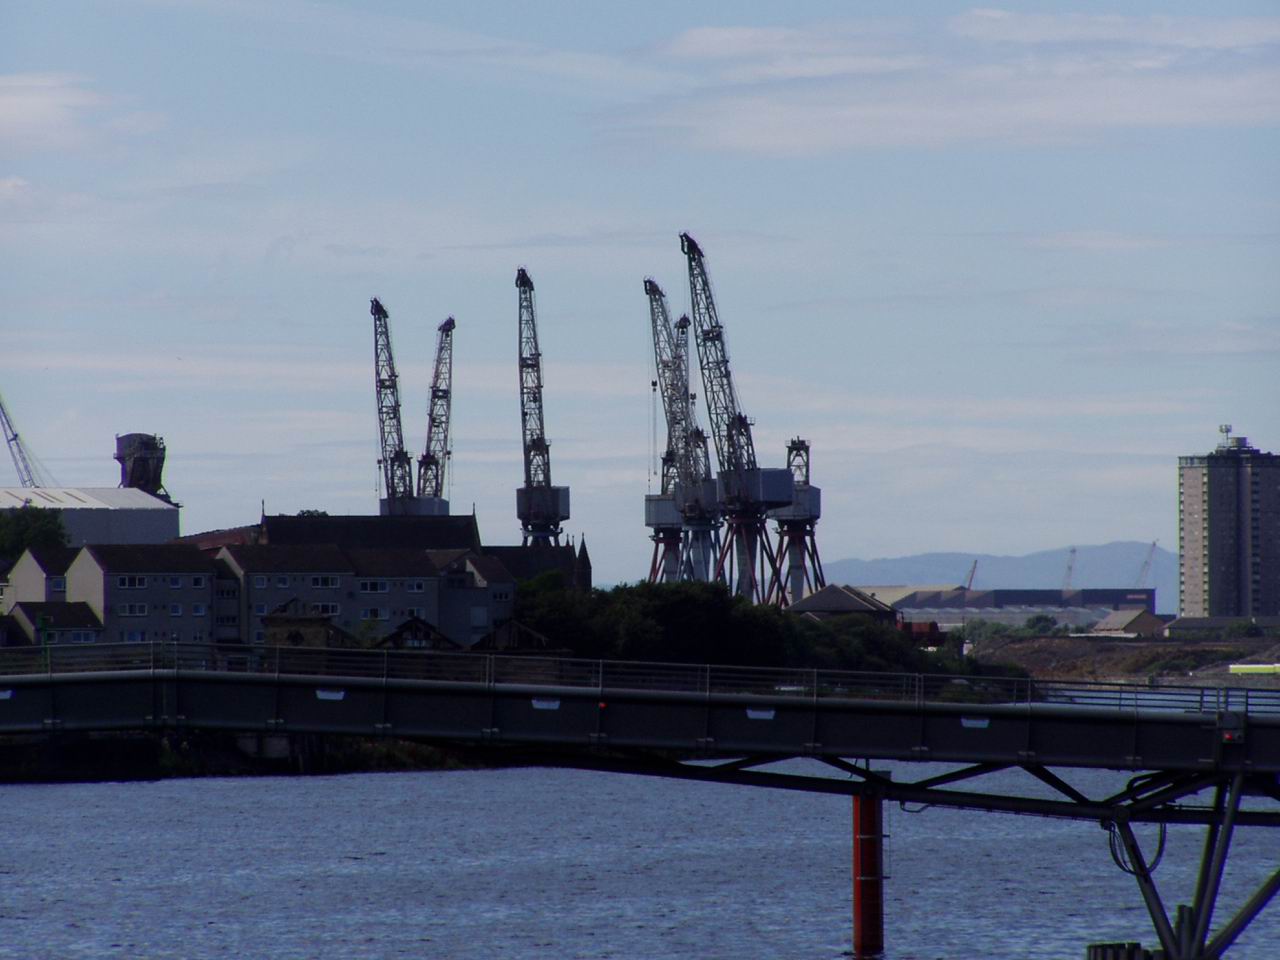 Port Glasgow